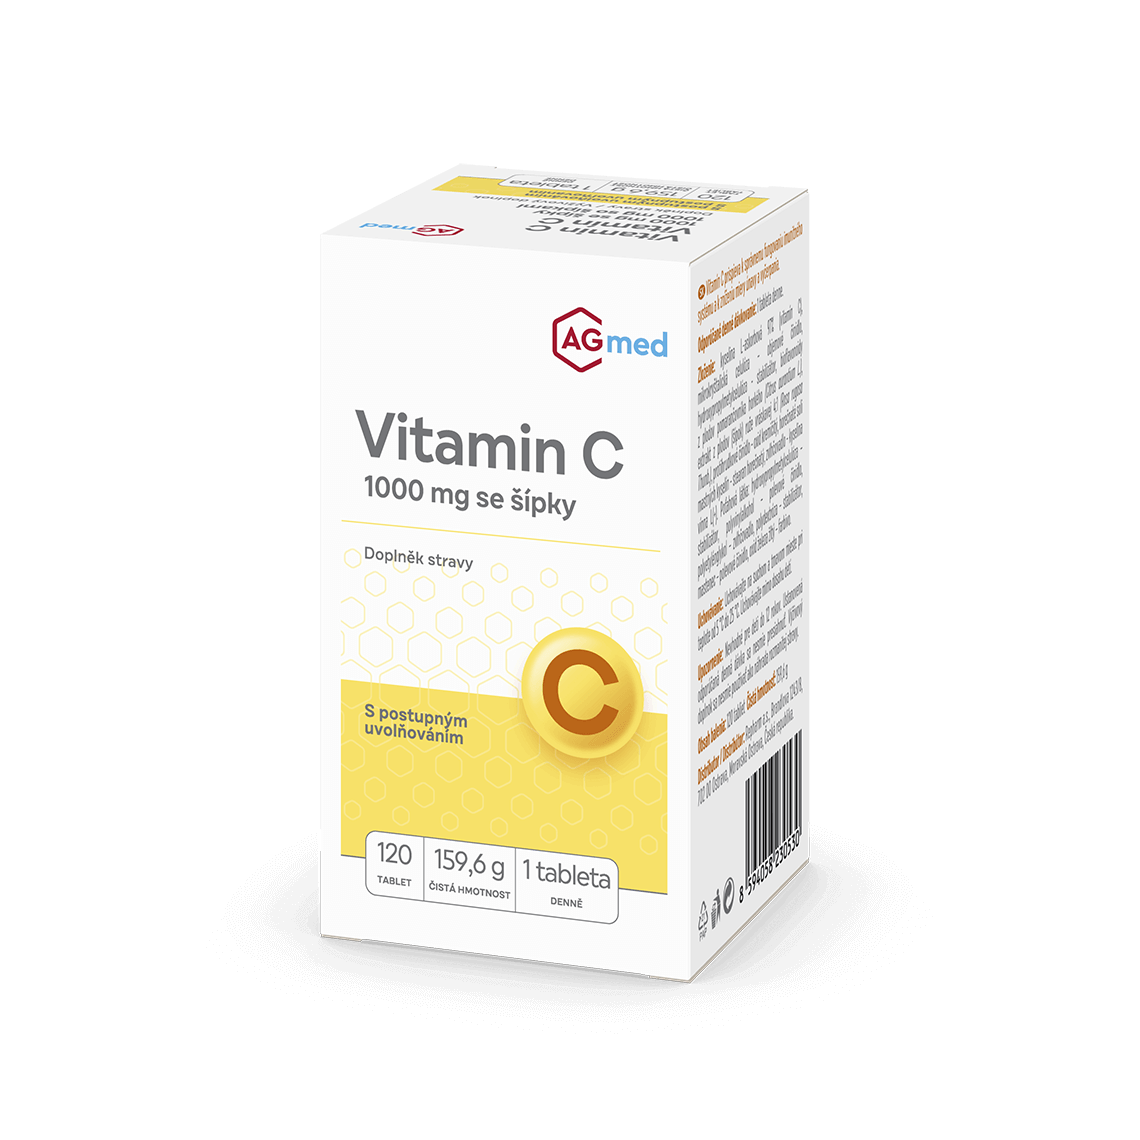 Vitamin C 1000 mg se šípky tbl.120 AGmed